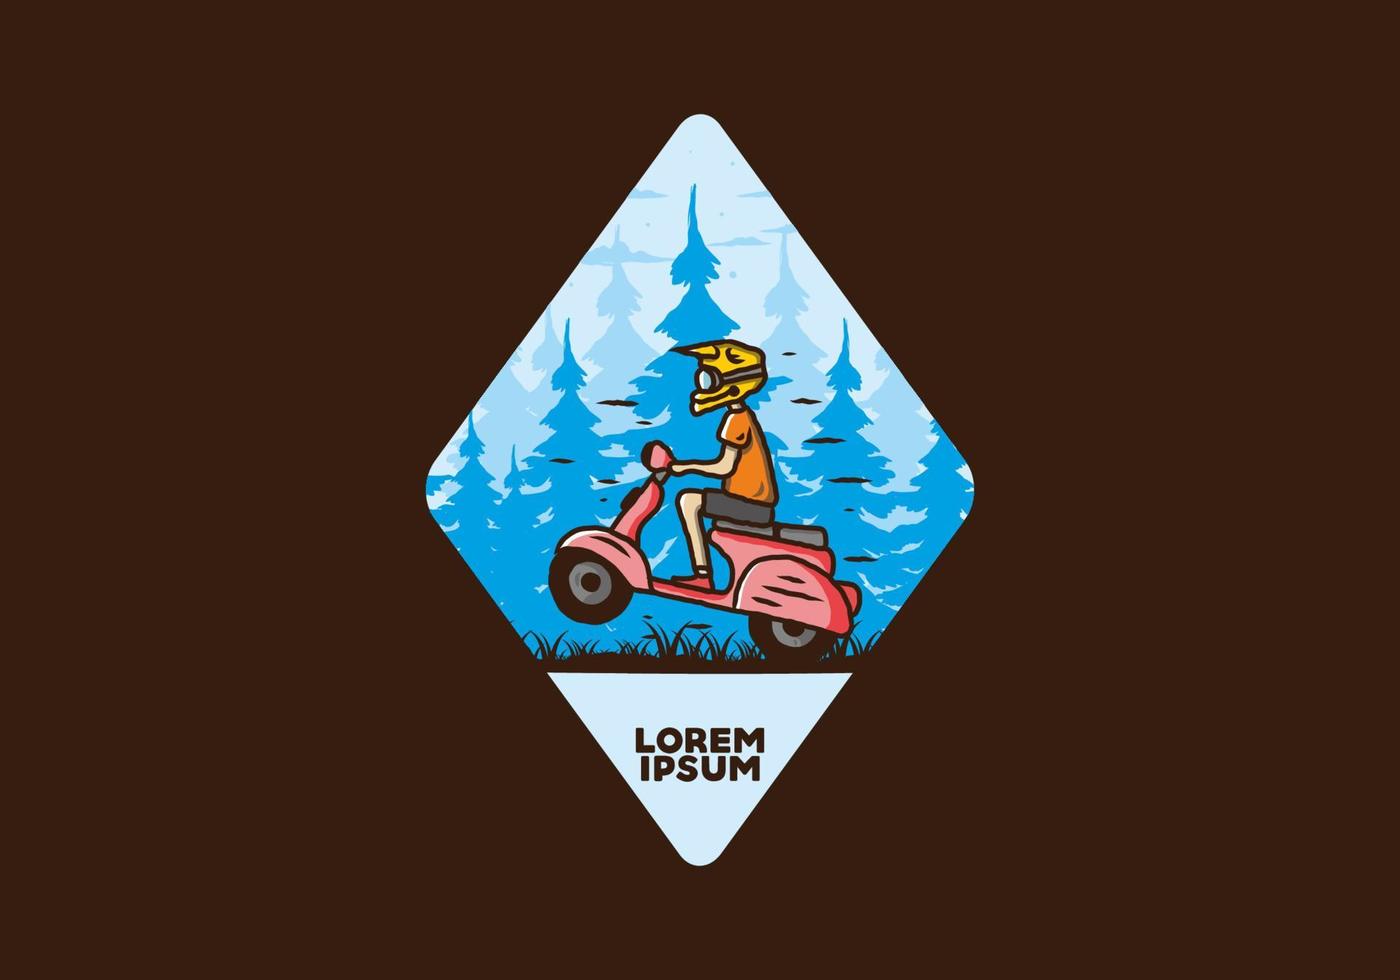 scooter em pé na ilustração da floresta vetor